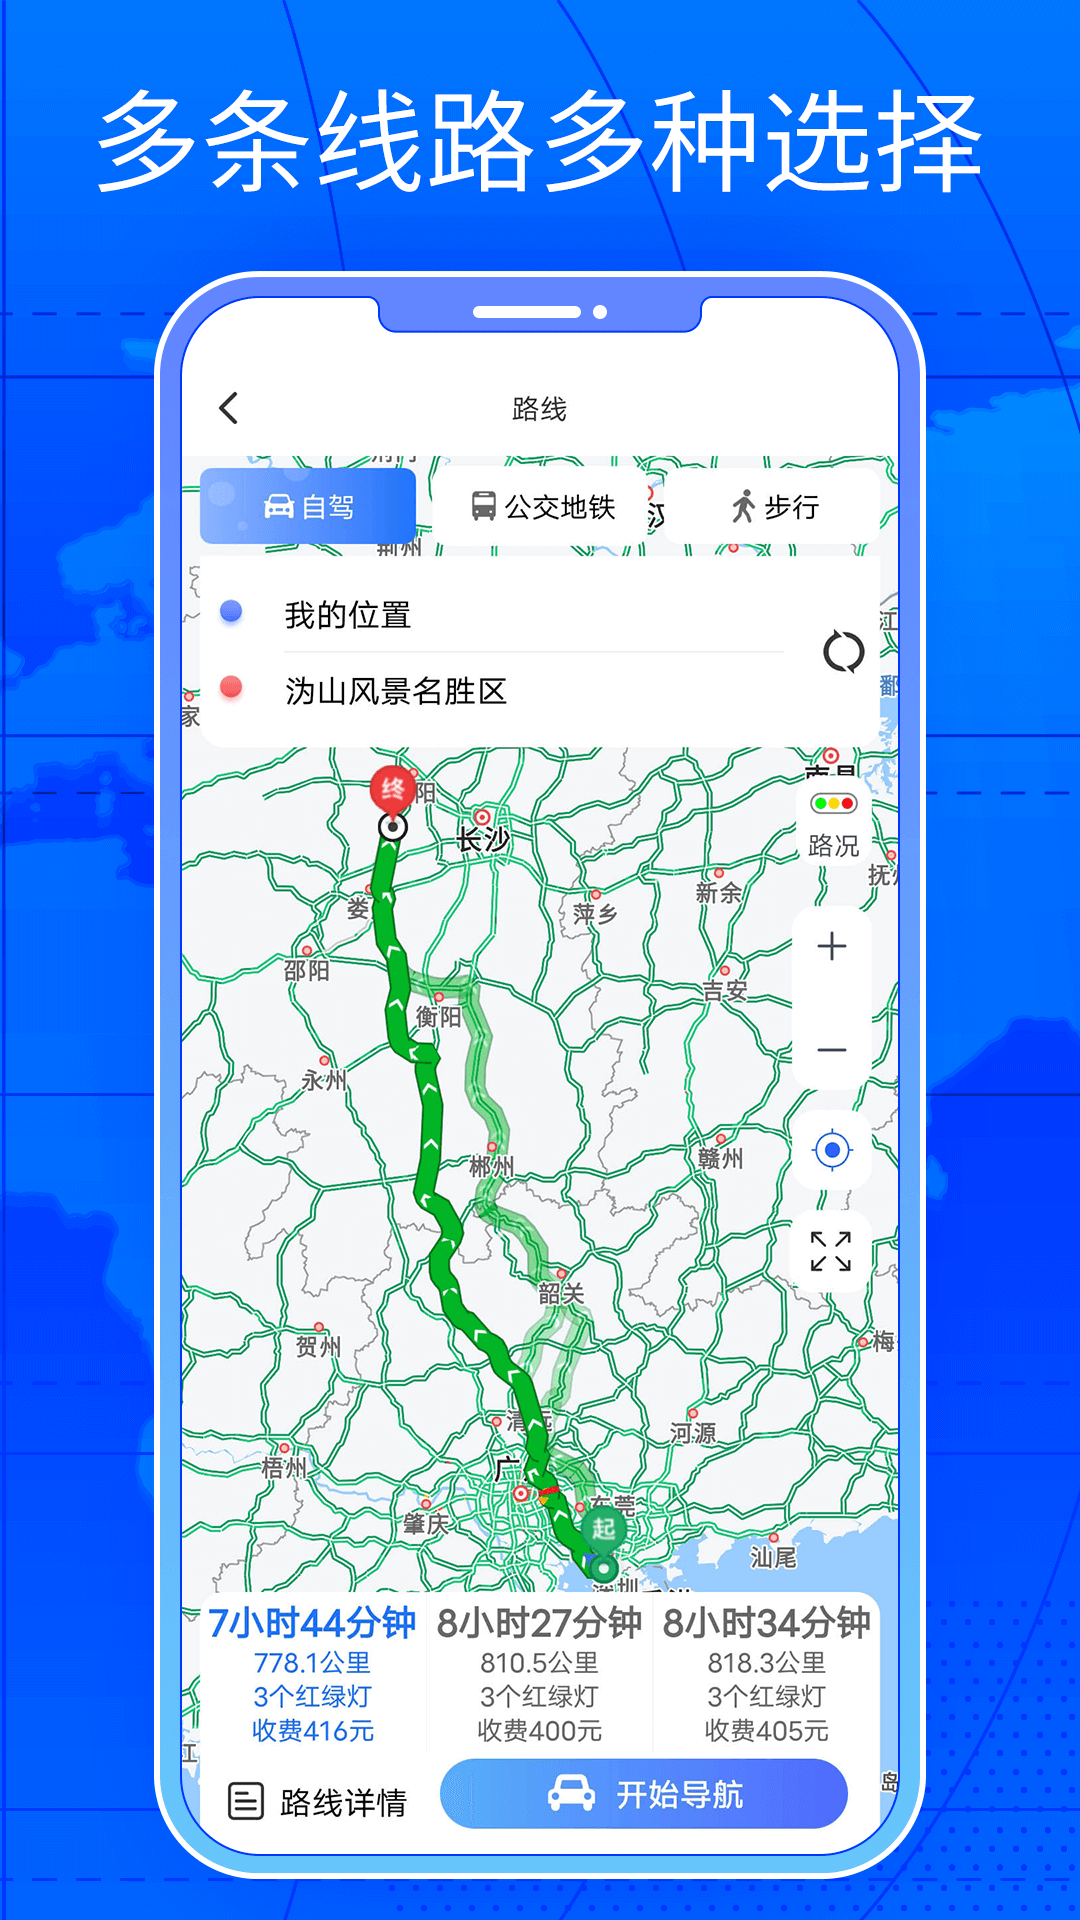 三维街景地图app下载,三维街景地图app下载软件手机版 v1.0